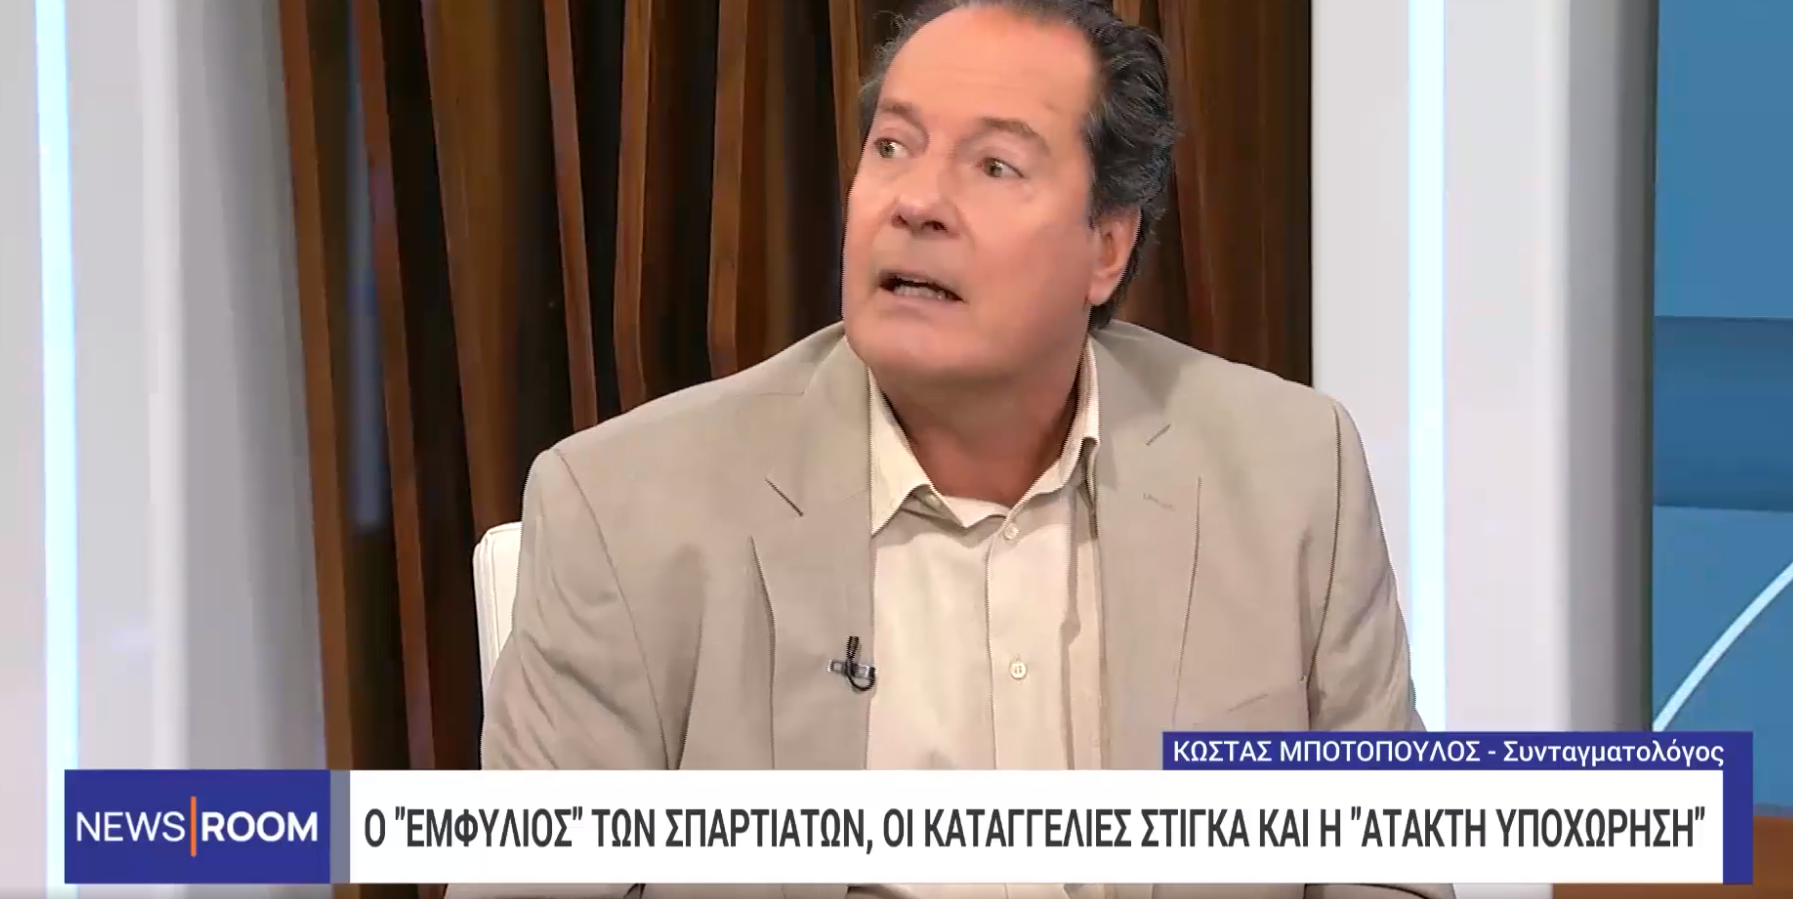 Κ. Μποτόπουλος, συνταγματολόγος: Oι ενδεχόμενες νομικές εξελίξεις για το κόμμα των «Σπαρτιατών»